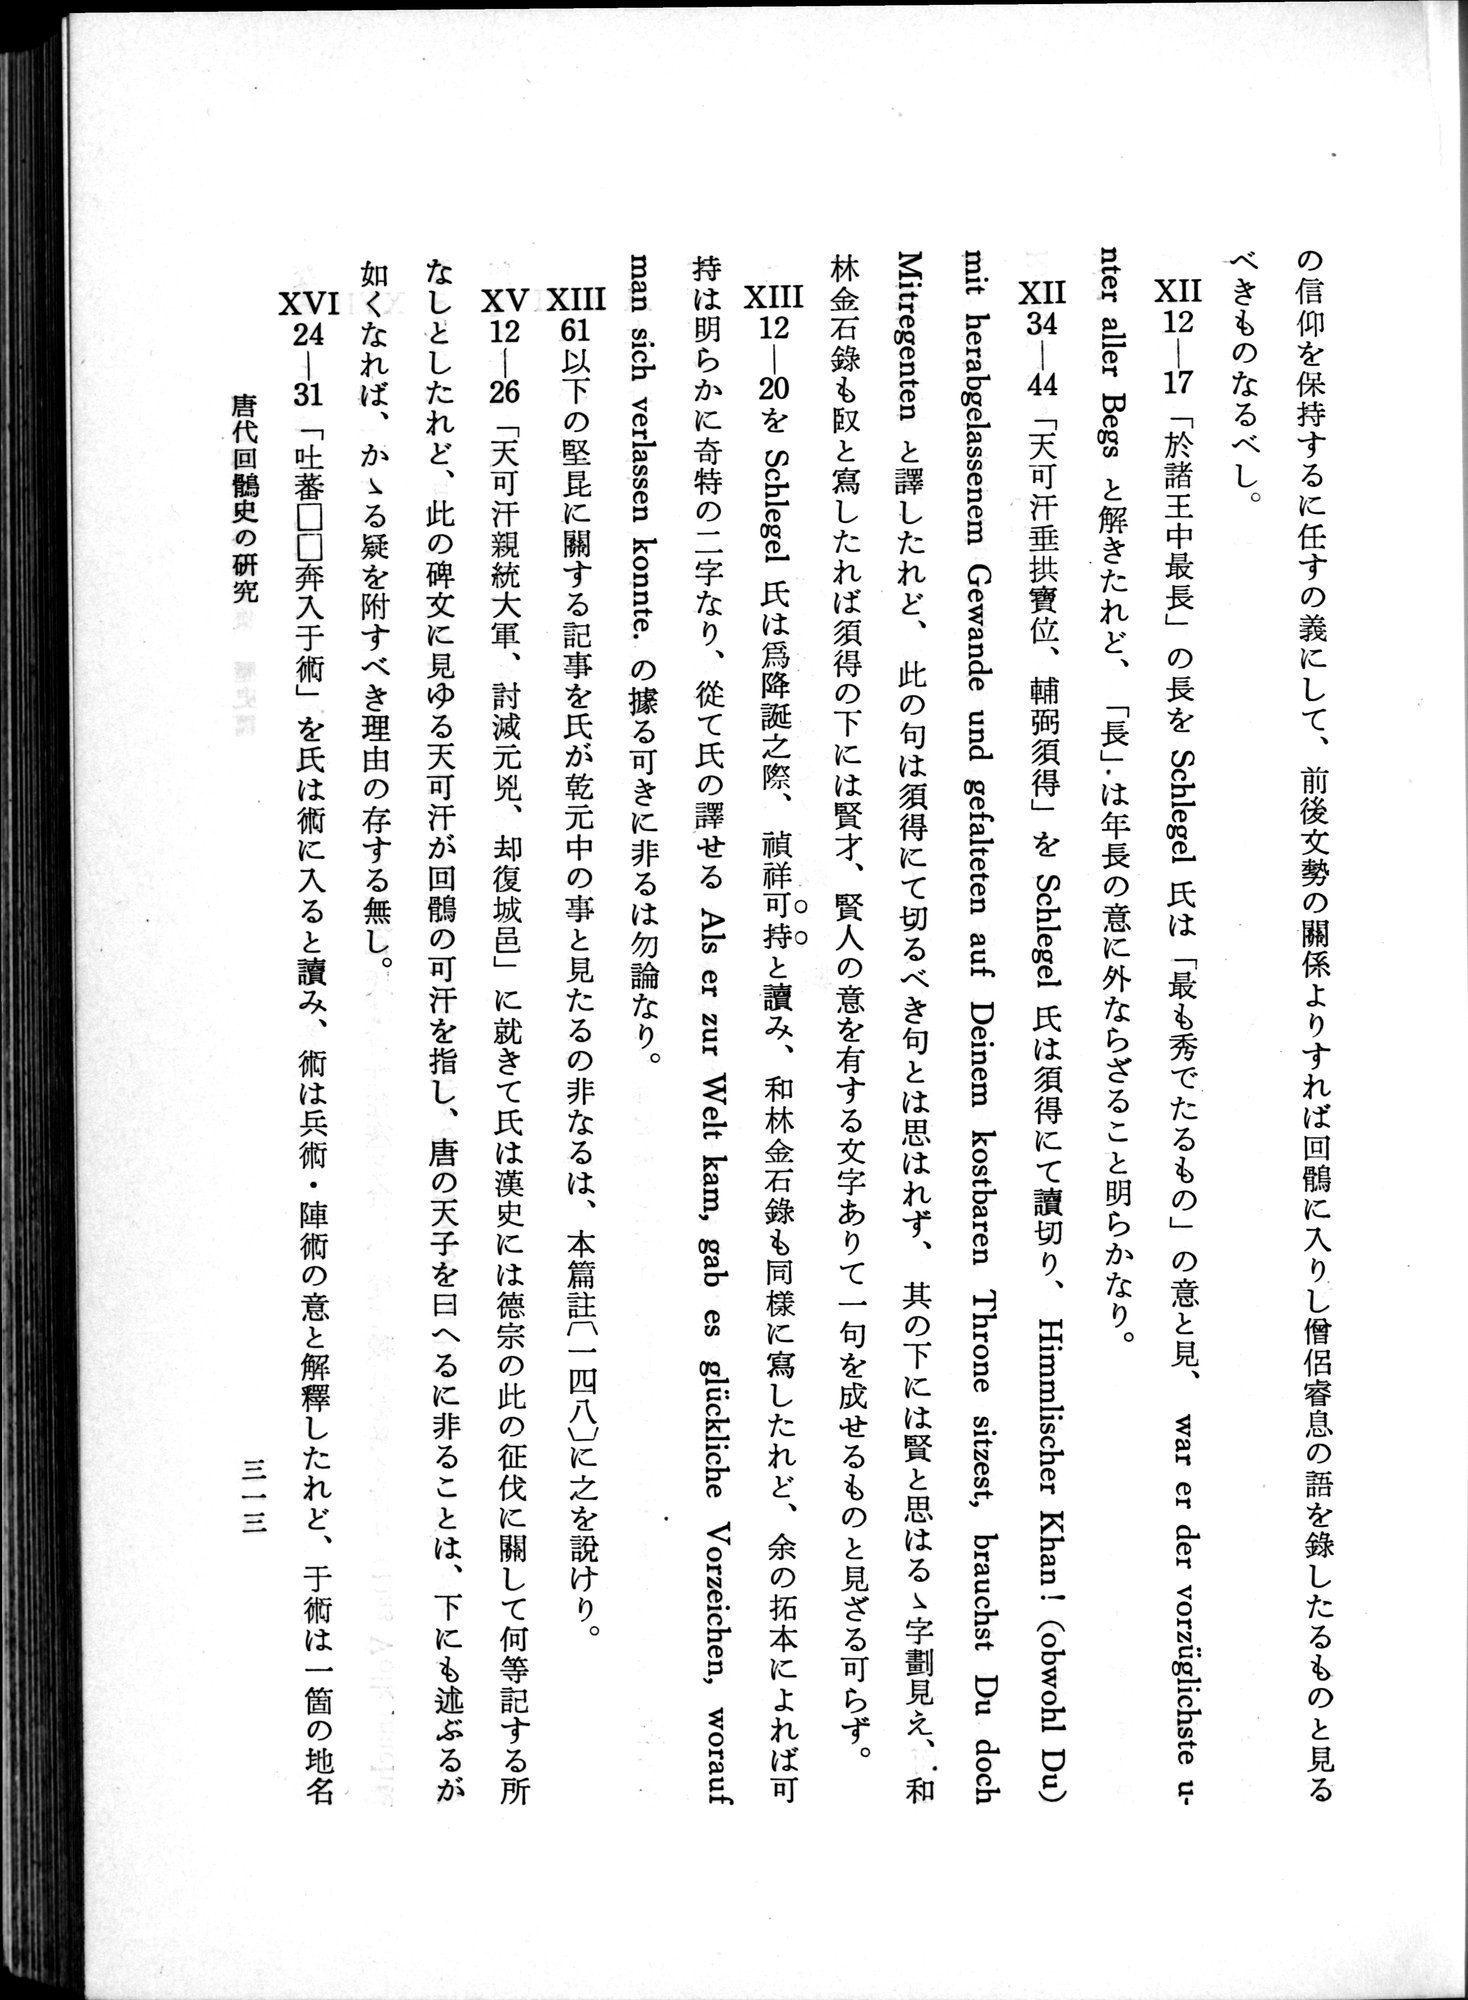 羽田博士史学論文集 : vol.1 / Page 351 (Grayscale High Resolution Image)